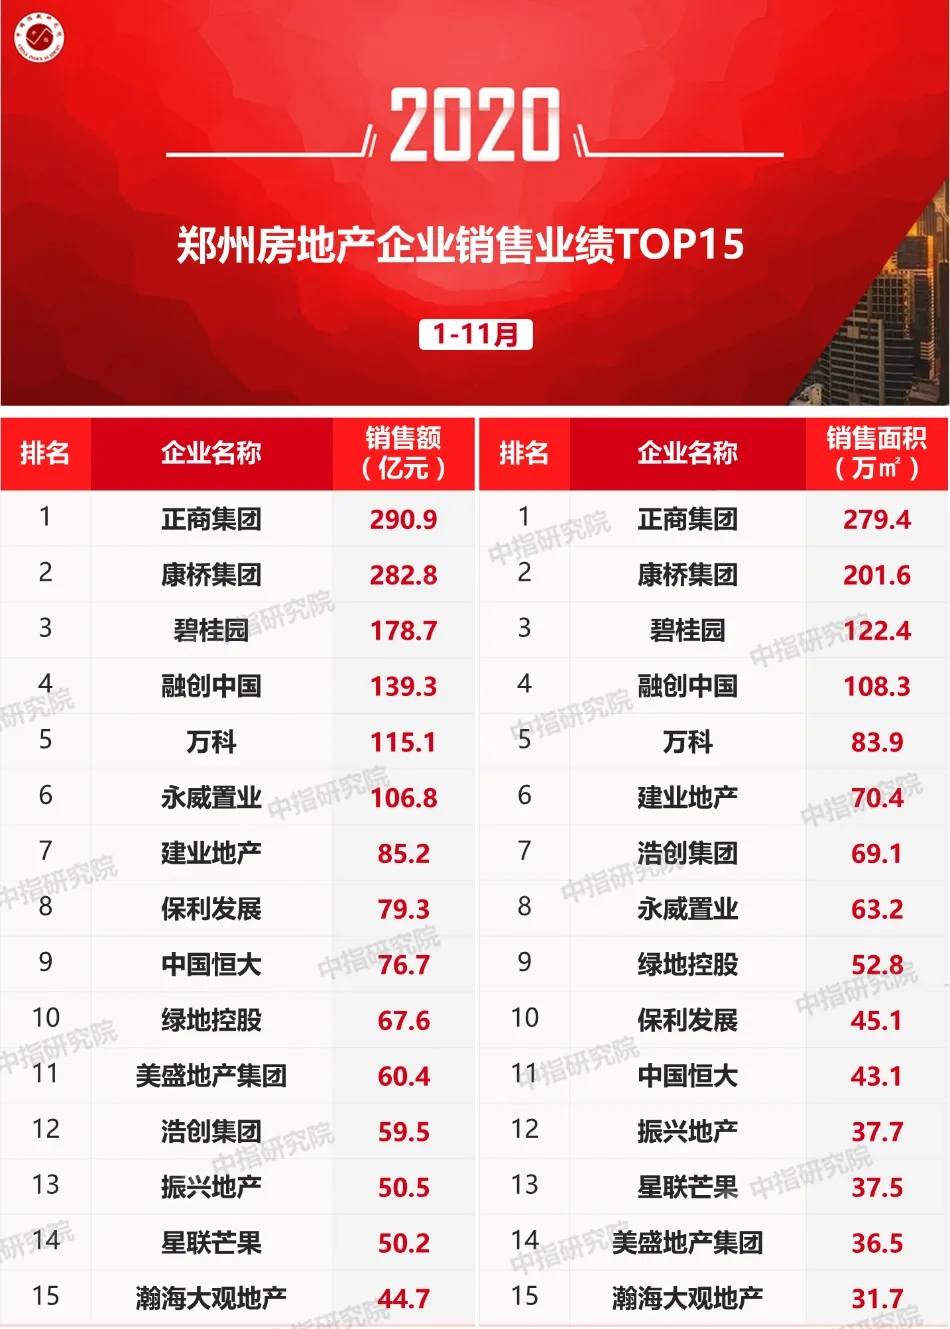 2020年1-11月郑州房地产企业销售业绩排行榜